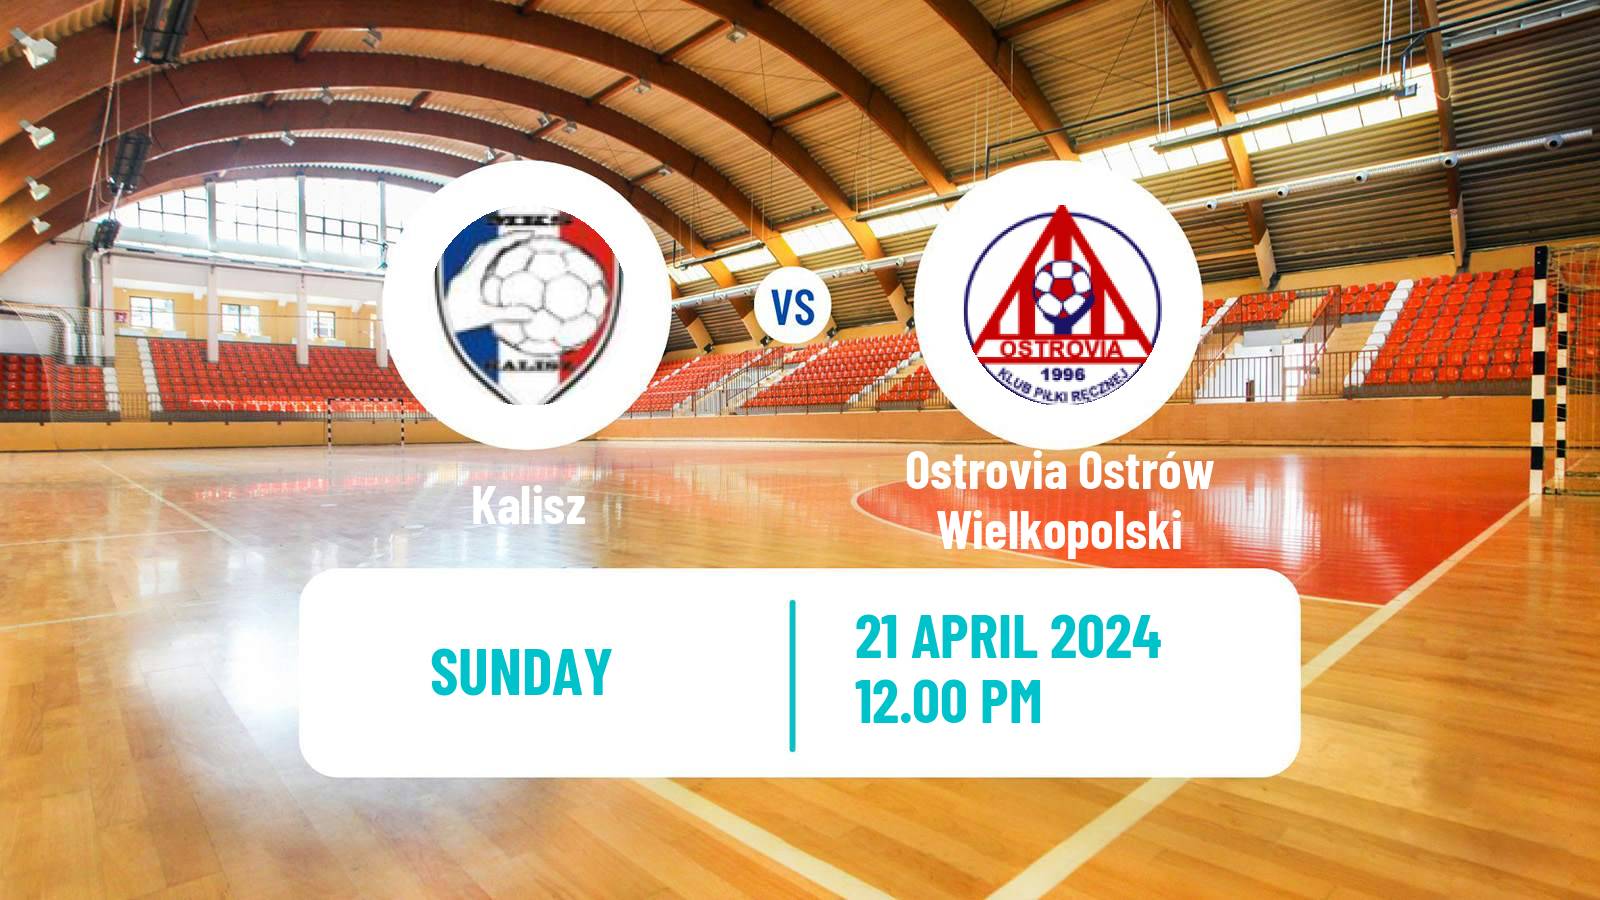 Handball Polish Superliga Handball Kalisz - Ostrovia Ostrów Wielkopolski